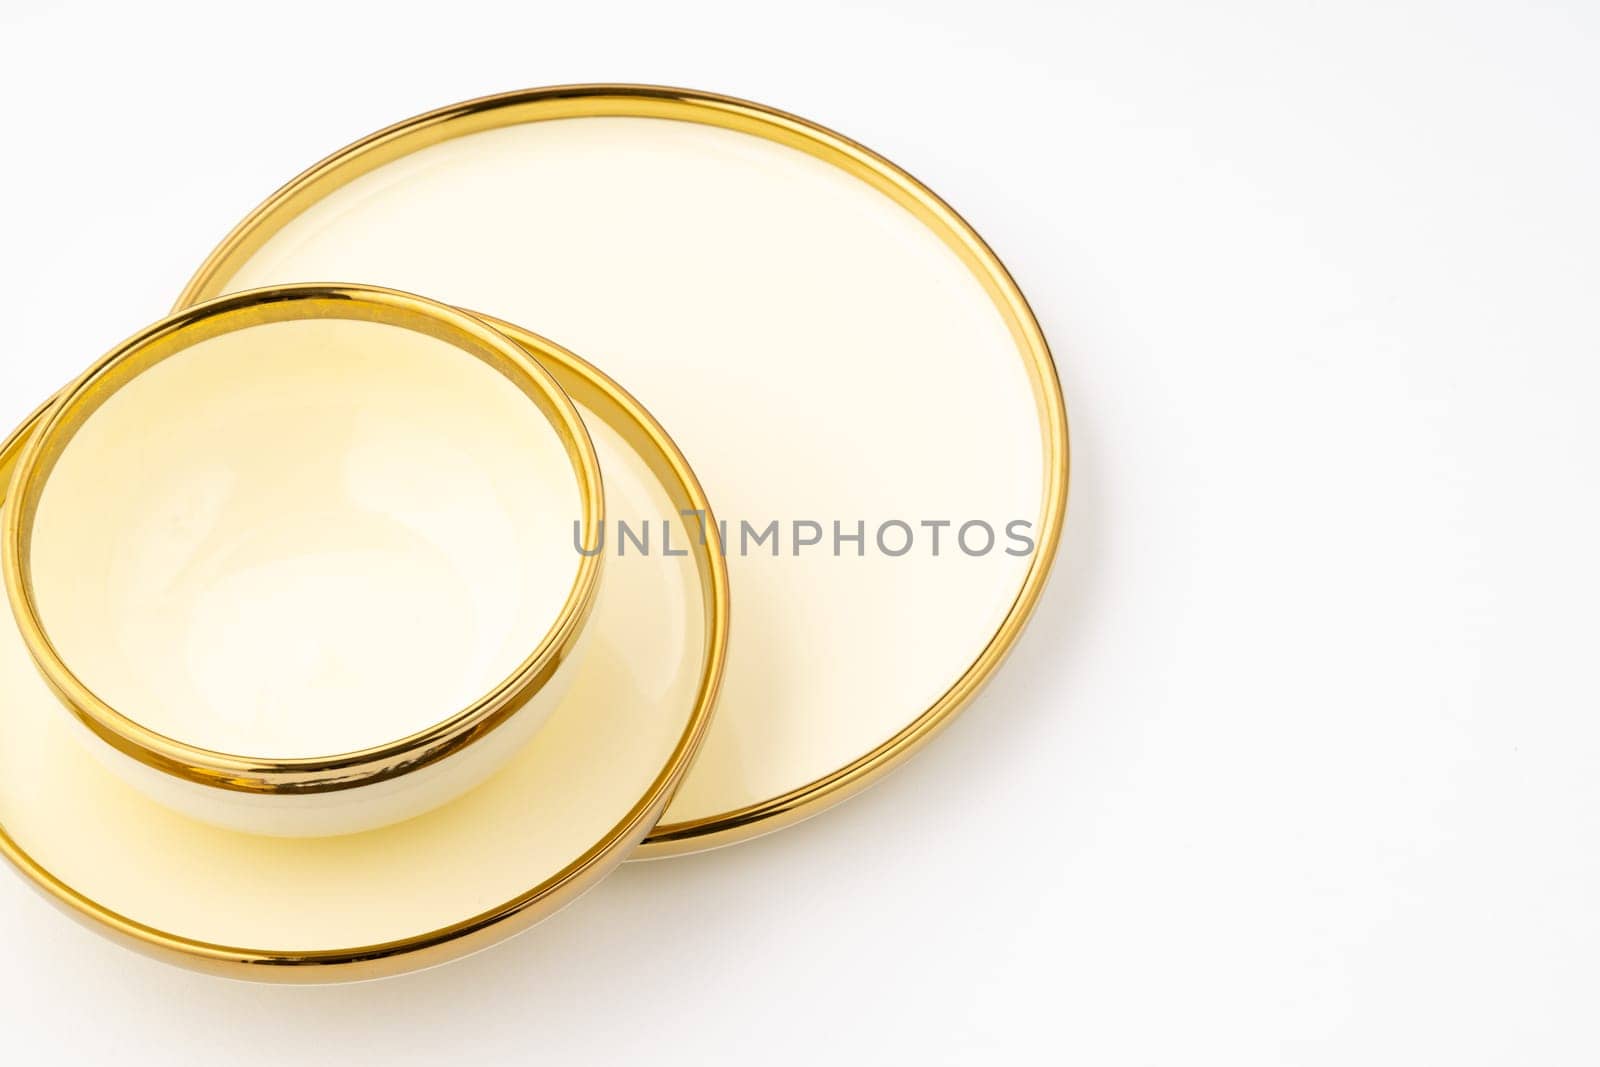 A golden luxury ceramic kitchen utensils on a white background